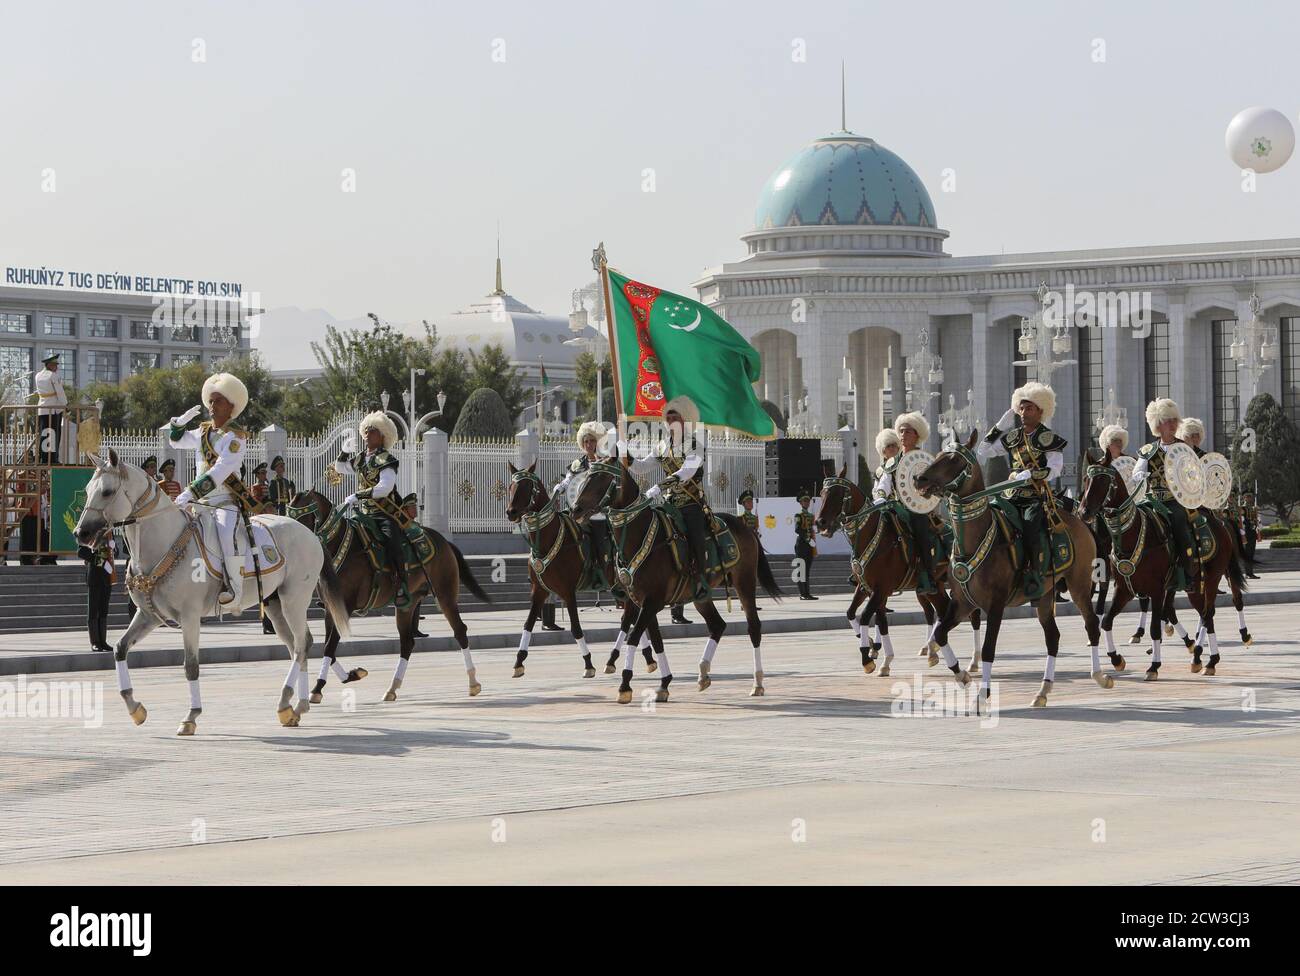 Turkmenische Dienstmitglieder reiten auf Pferden während einer Parade zum Unabhängigkeitstag in Aschgabat, Turkmenistan, 27. September 2020. REUTERS/Wjatscheslaw Sarkisyan Stockfoto